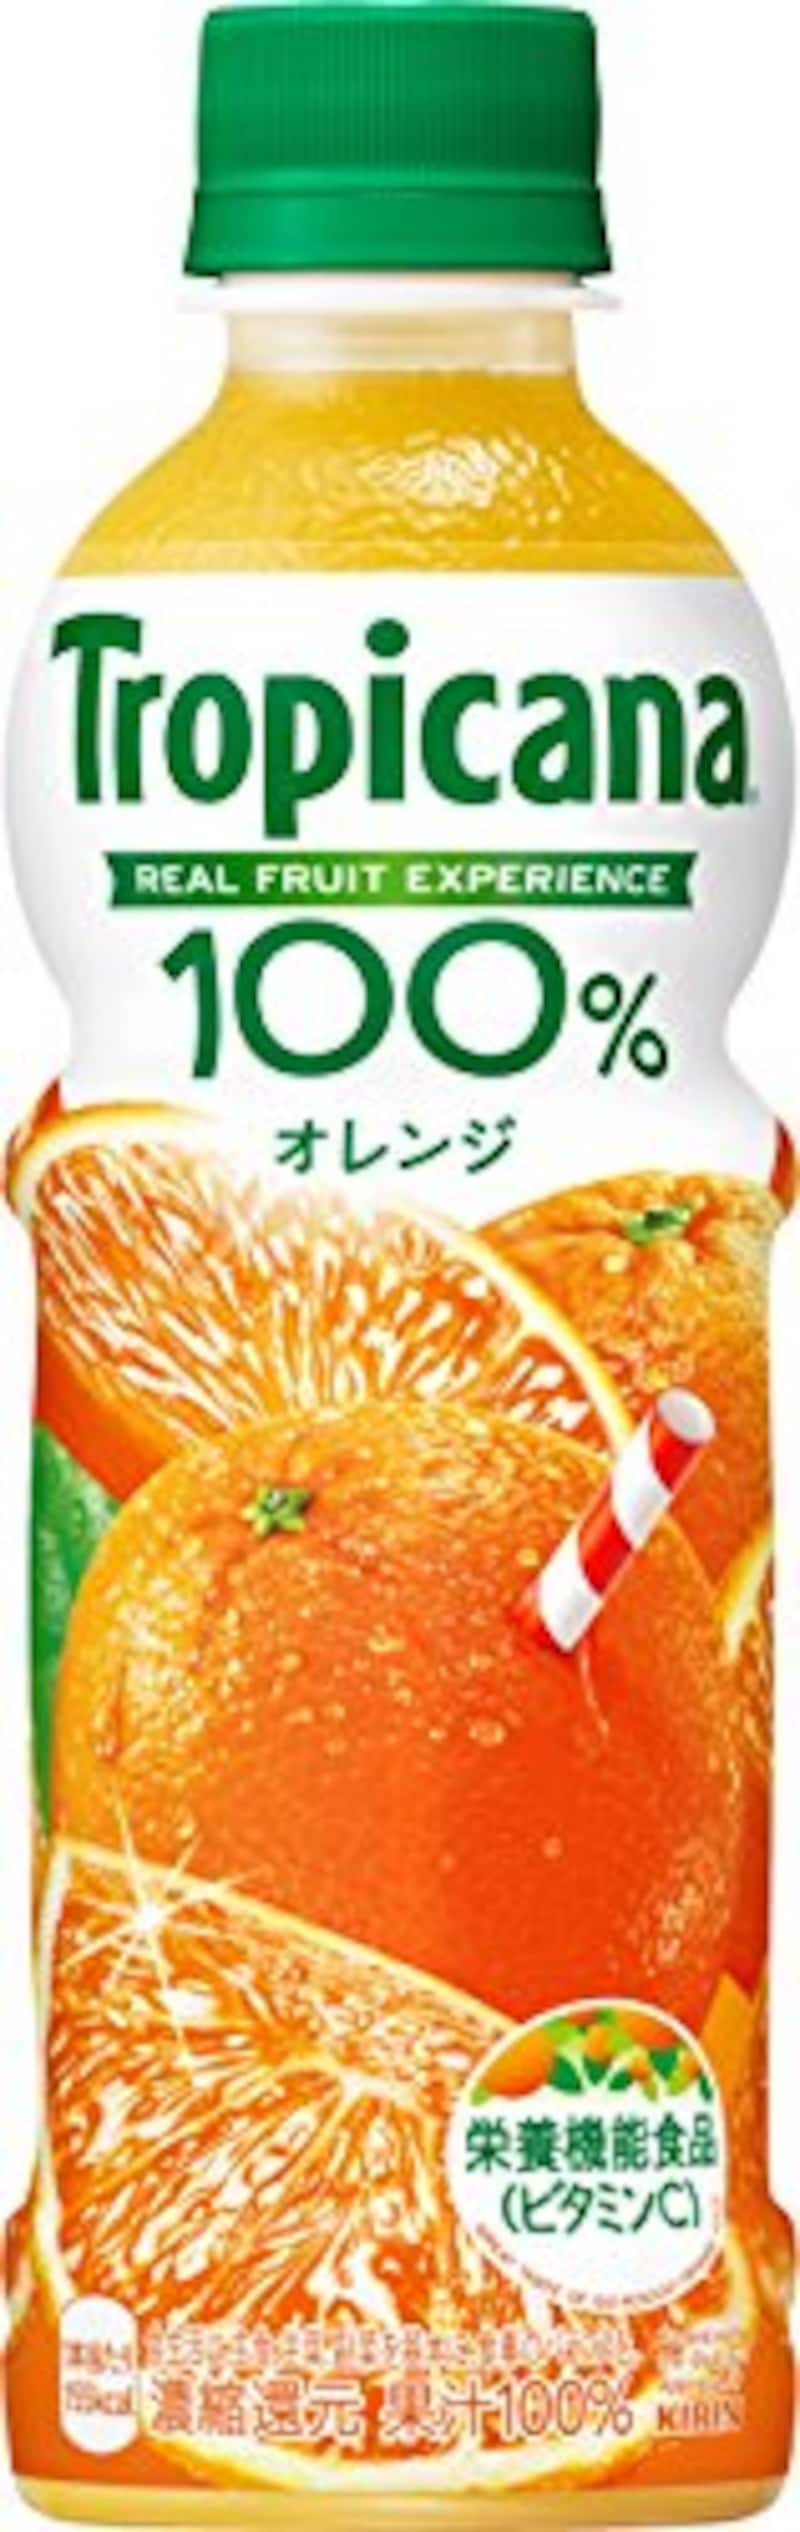 キリン,トロピカーナ 100%オレンジ